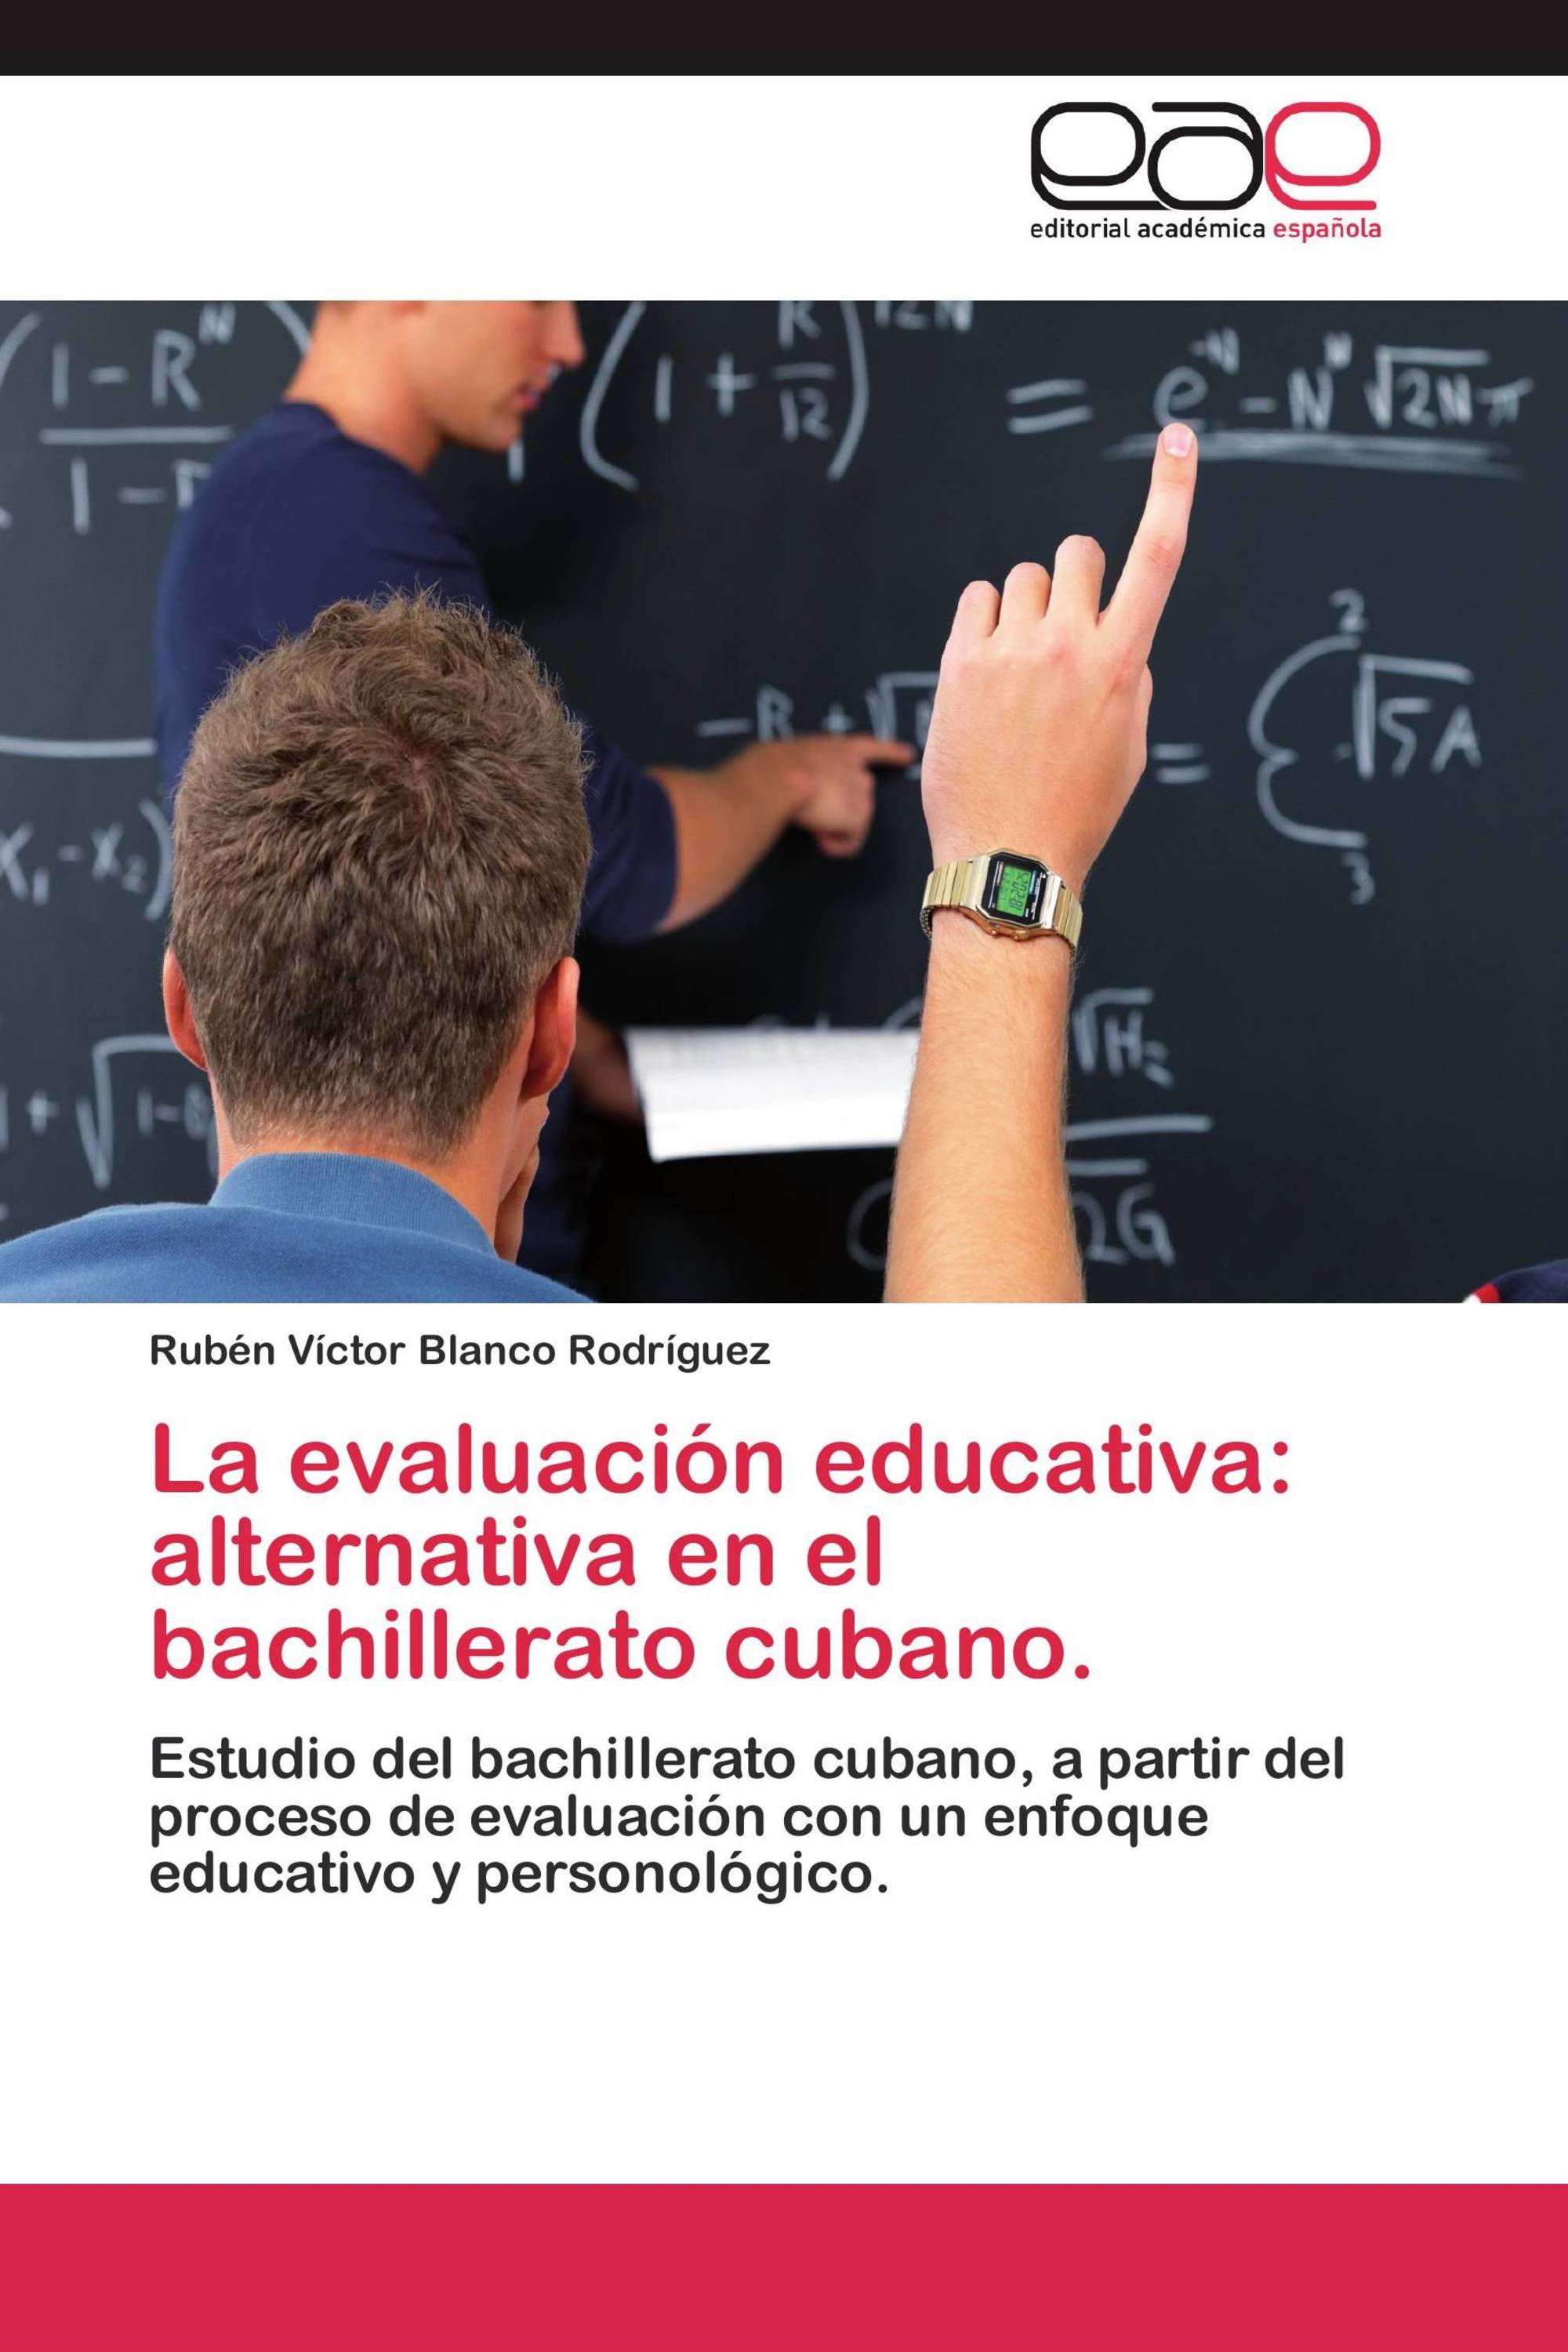 La evaluación educativa: alternativa en el bachillerato cubano.